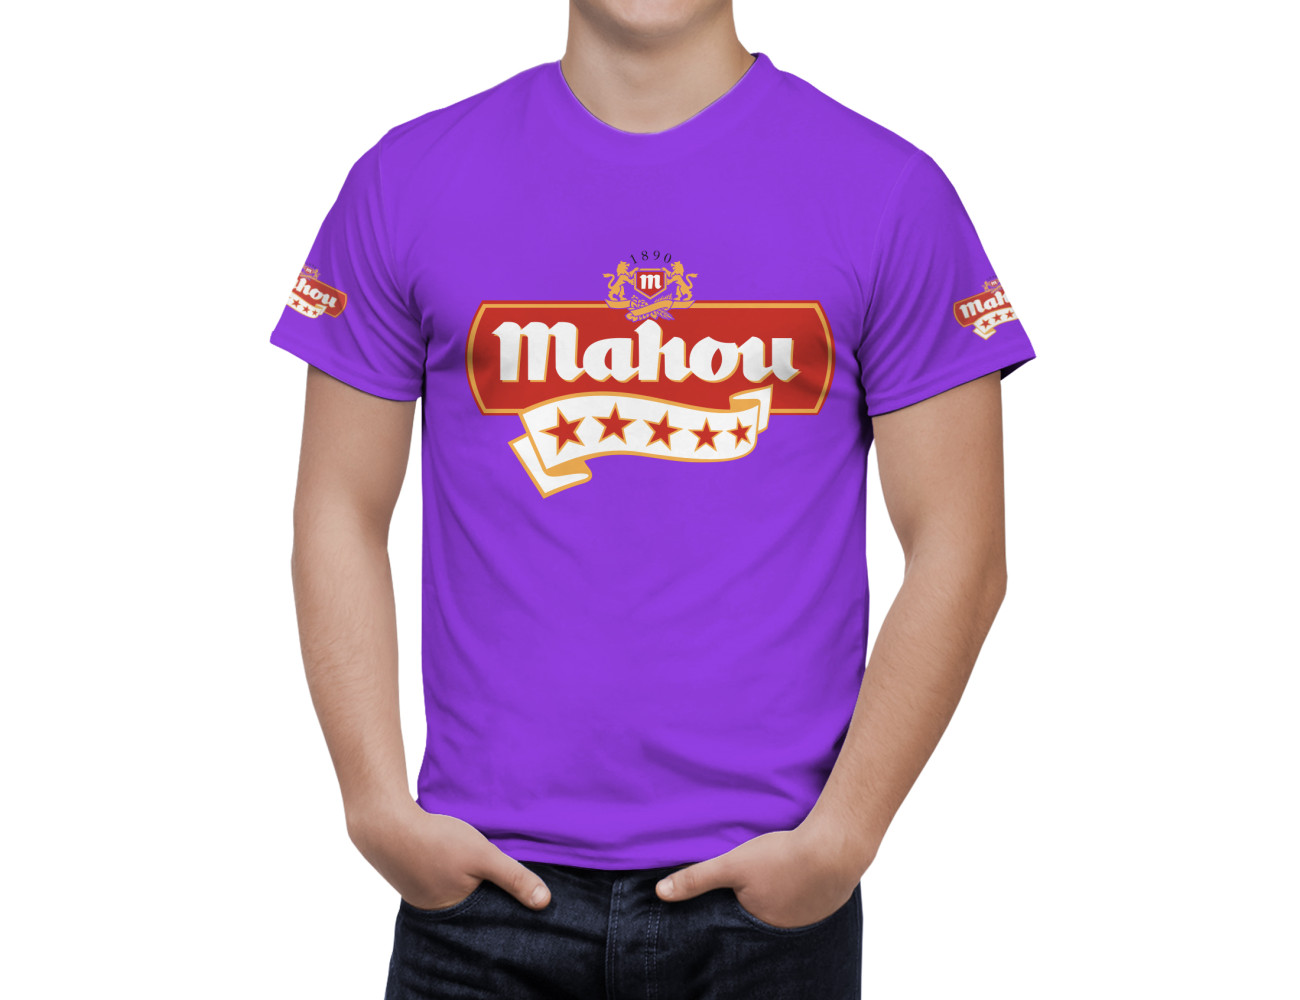 Mahou Beer T-Shirt